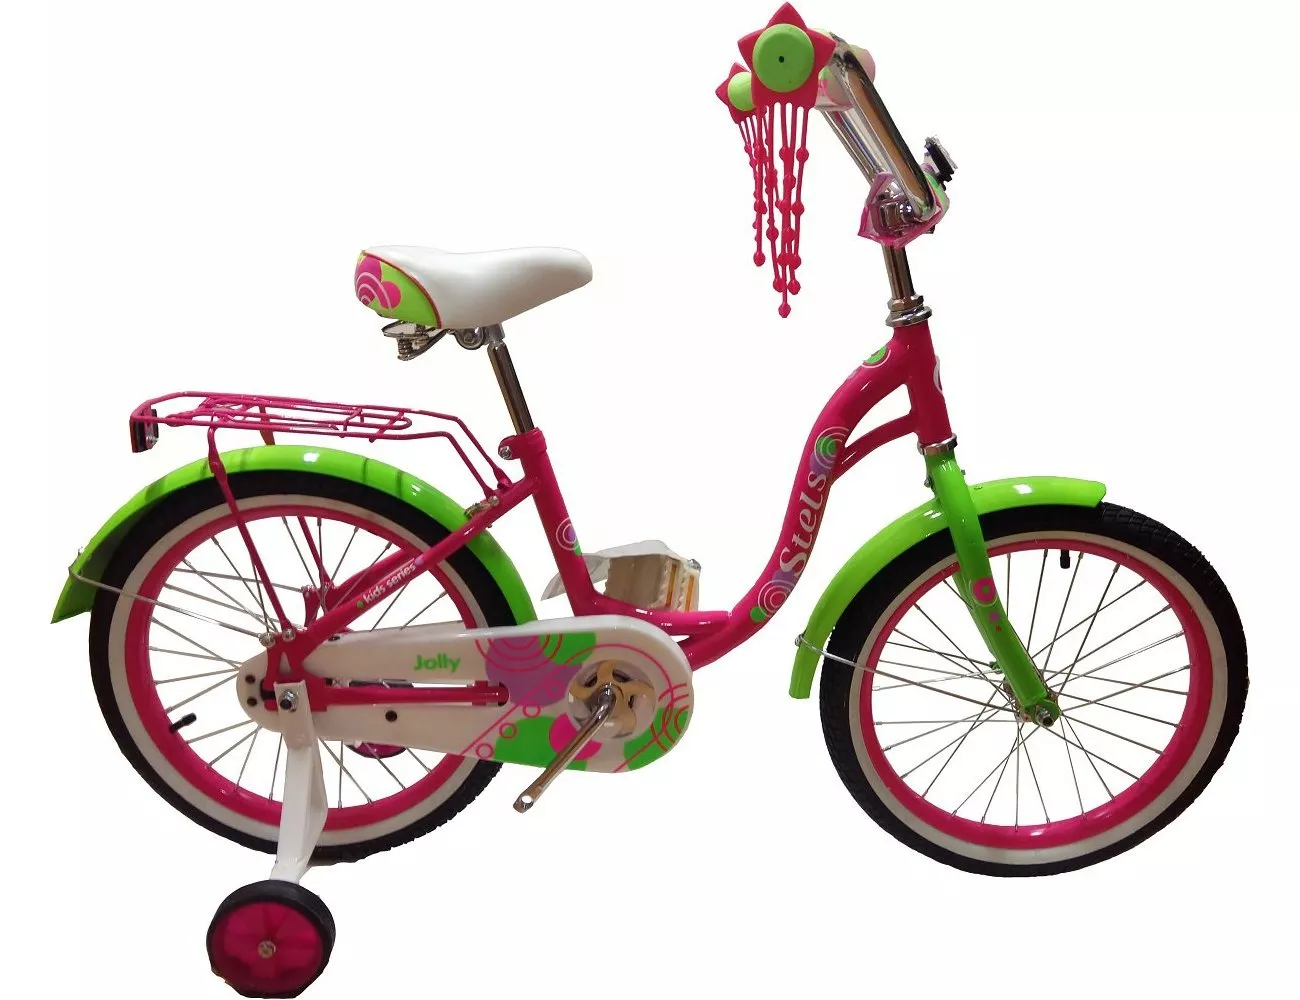 Купить детский велосипед в ростове на дону. Велосипед stels Jolly 14 v010. Велосипед стелс Jolly 18. Велосипед детский stels Jolly 14. Stels Jolly 18 v010.